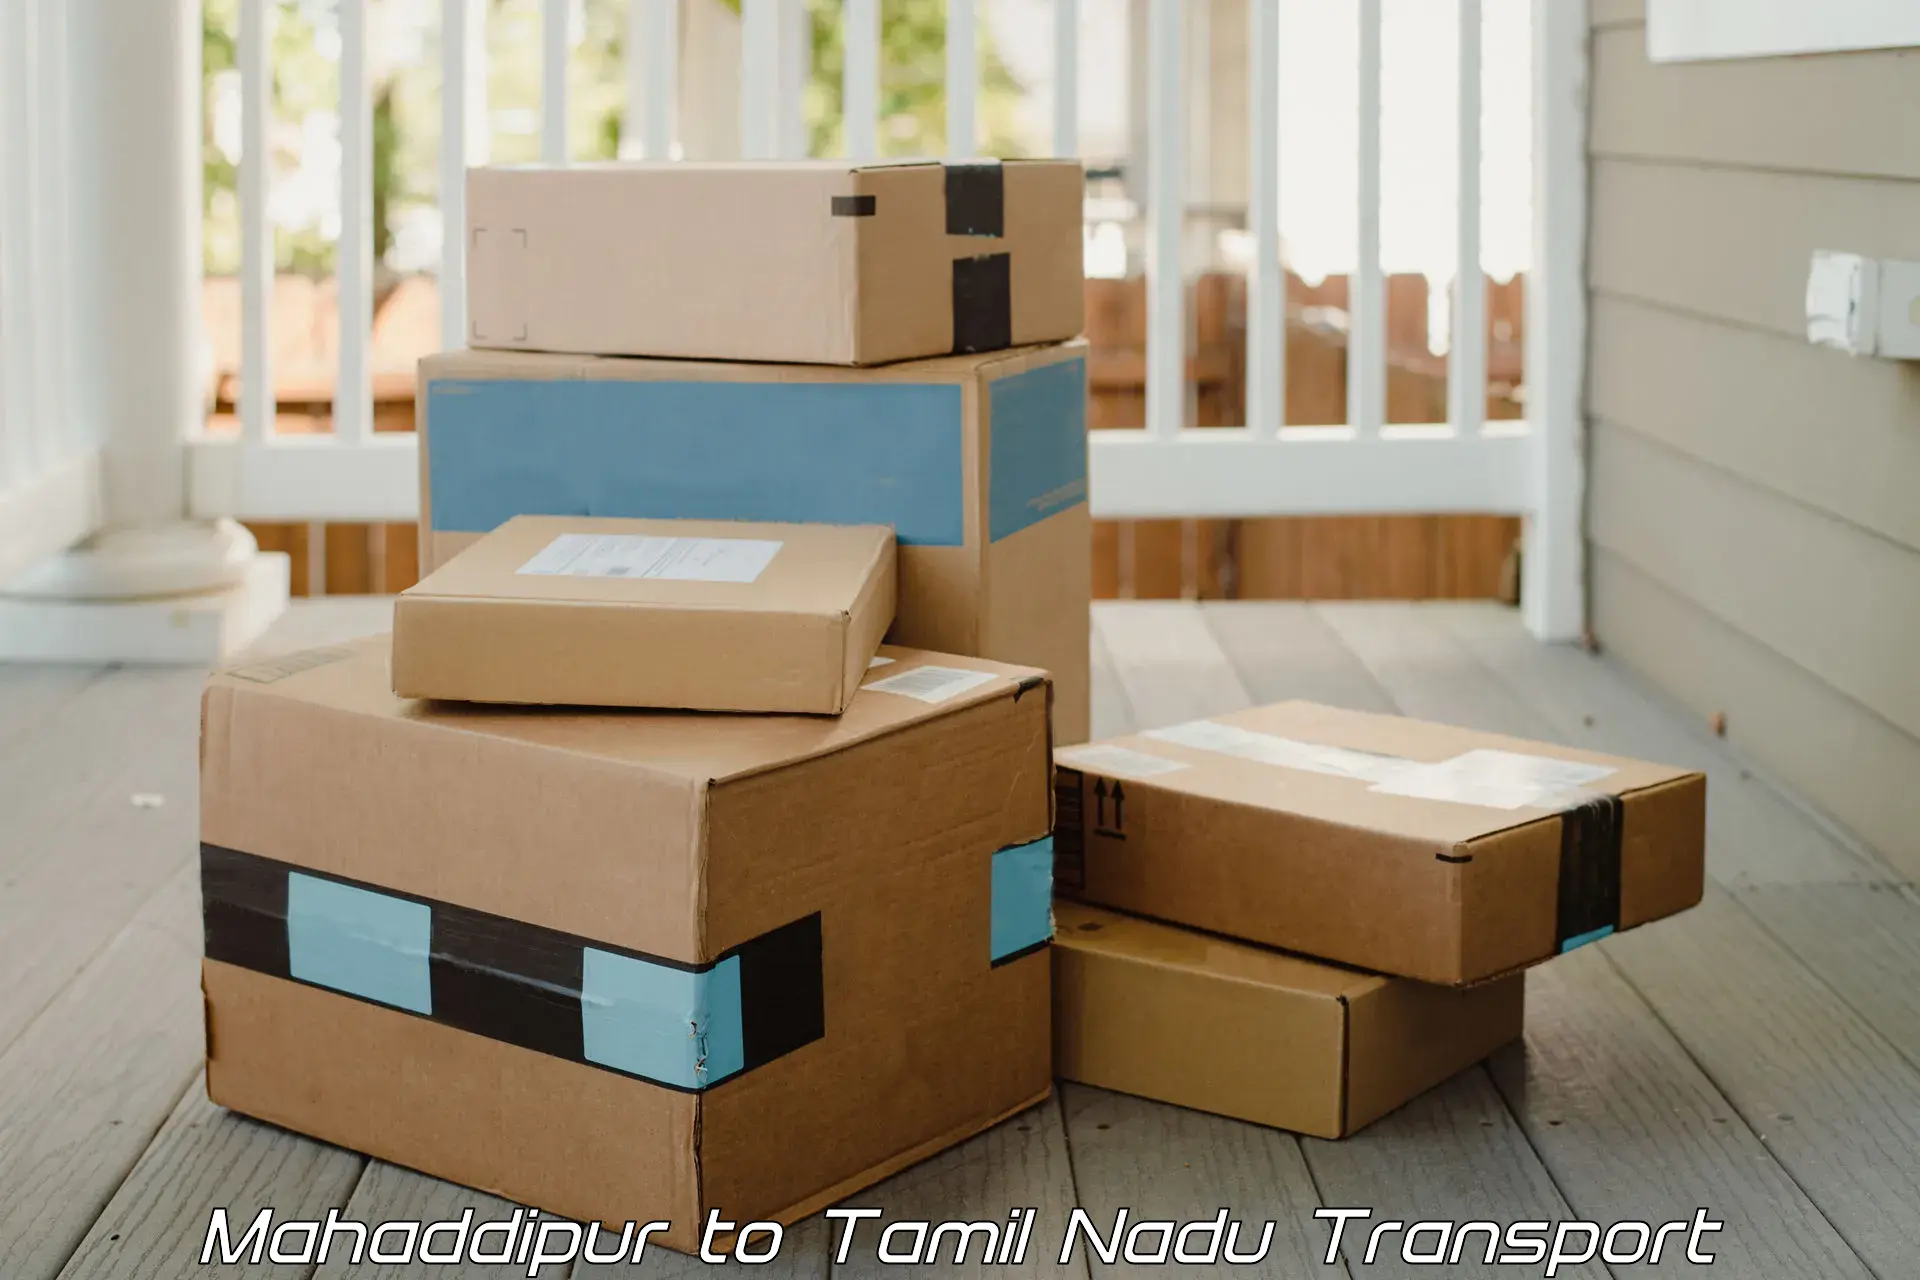 Shipping services Mahaddipur to Kanyakumari